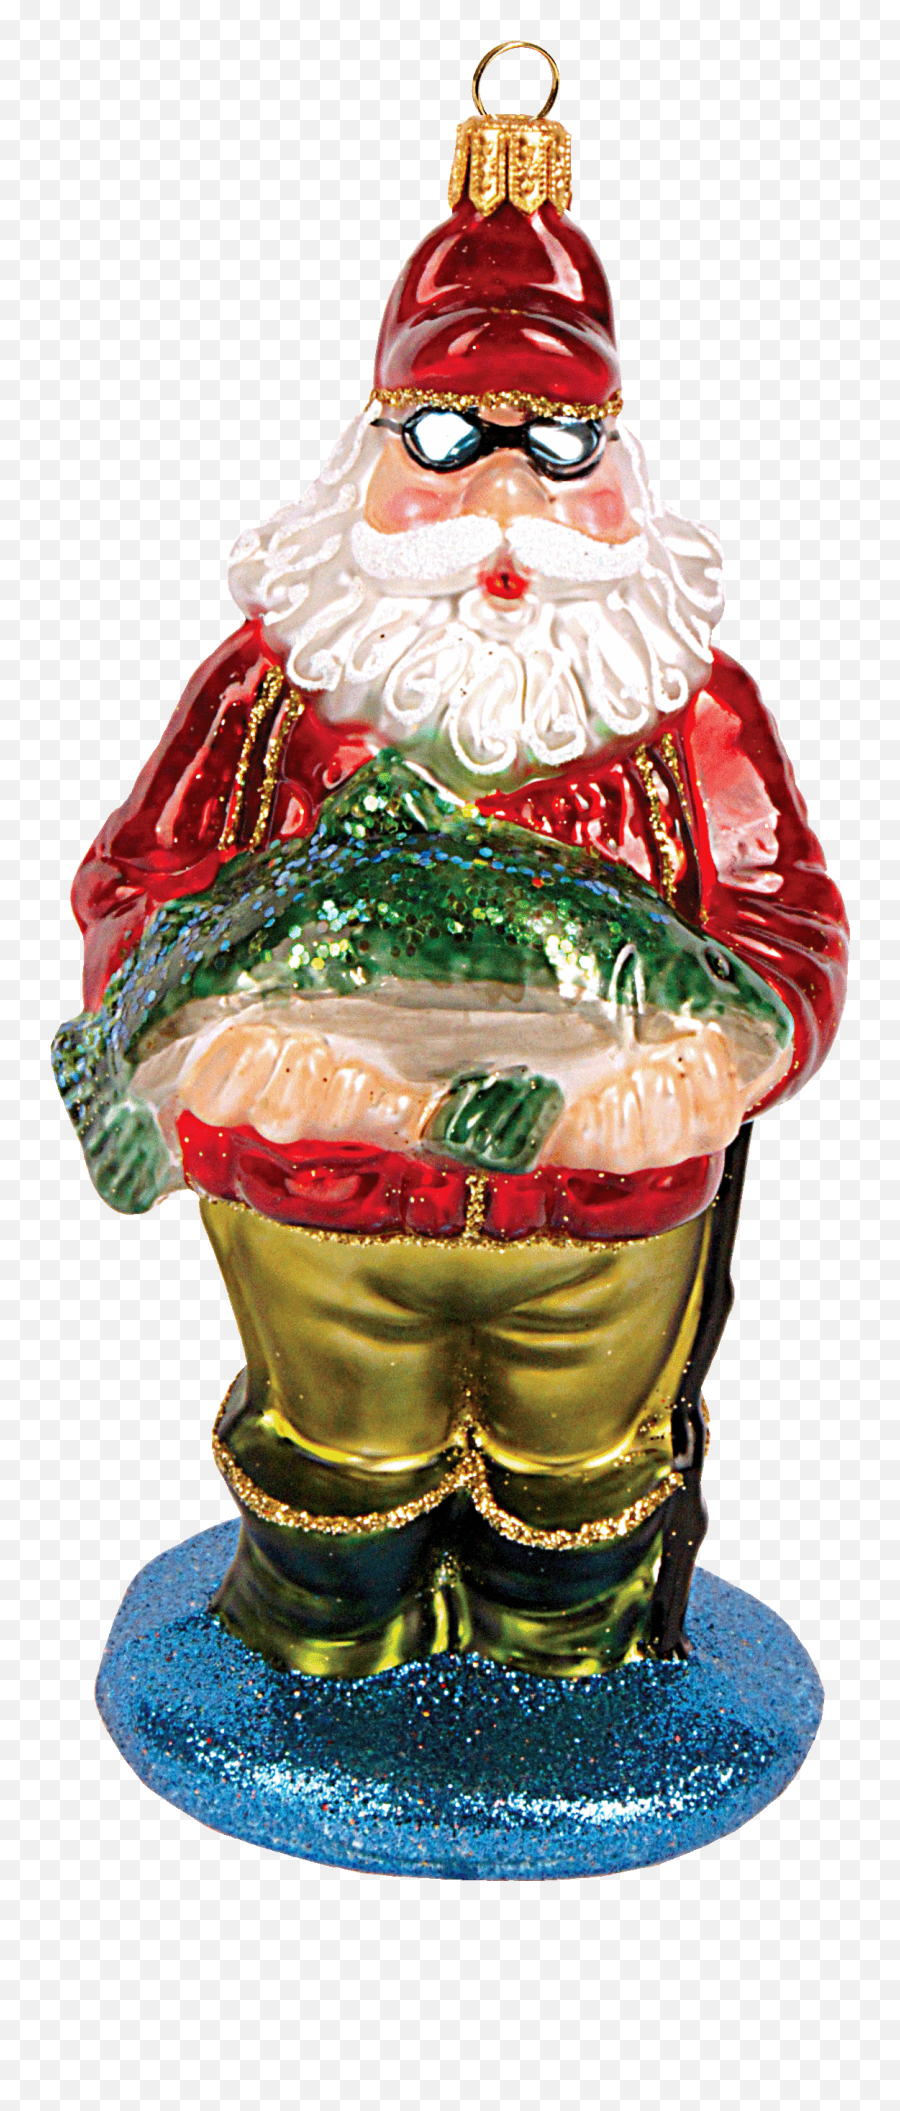 2521 - Santa Claus Emoji,Lawn Gnome Emoticon